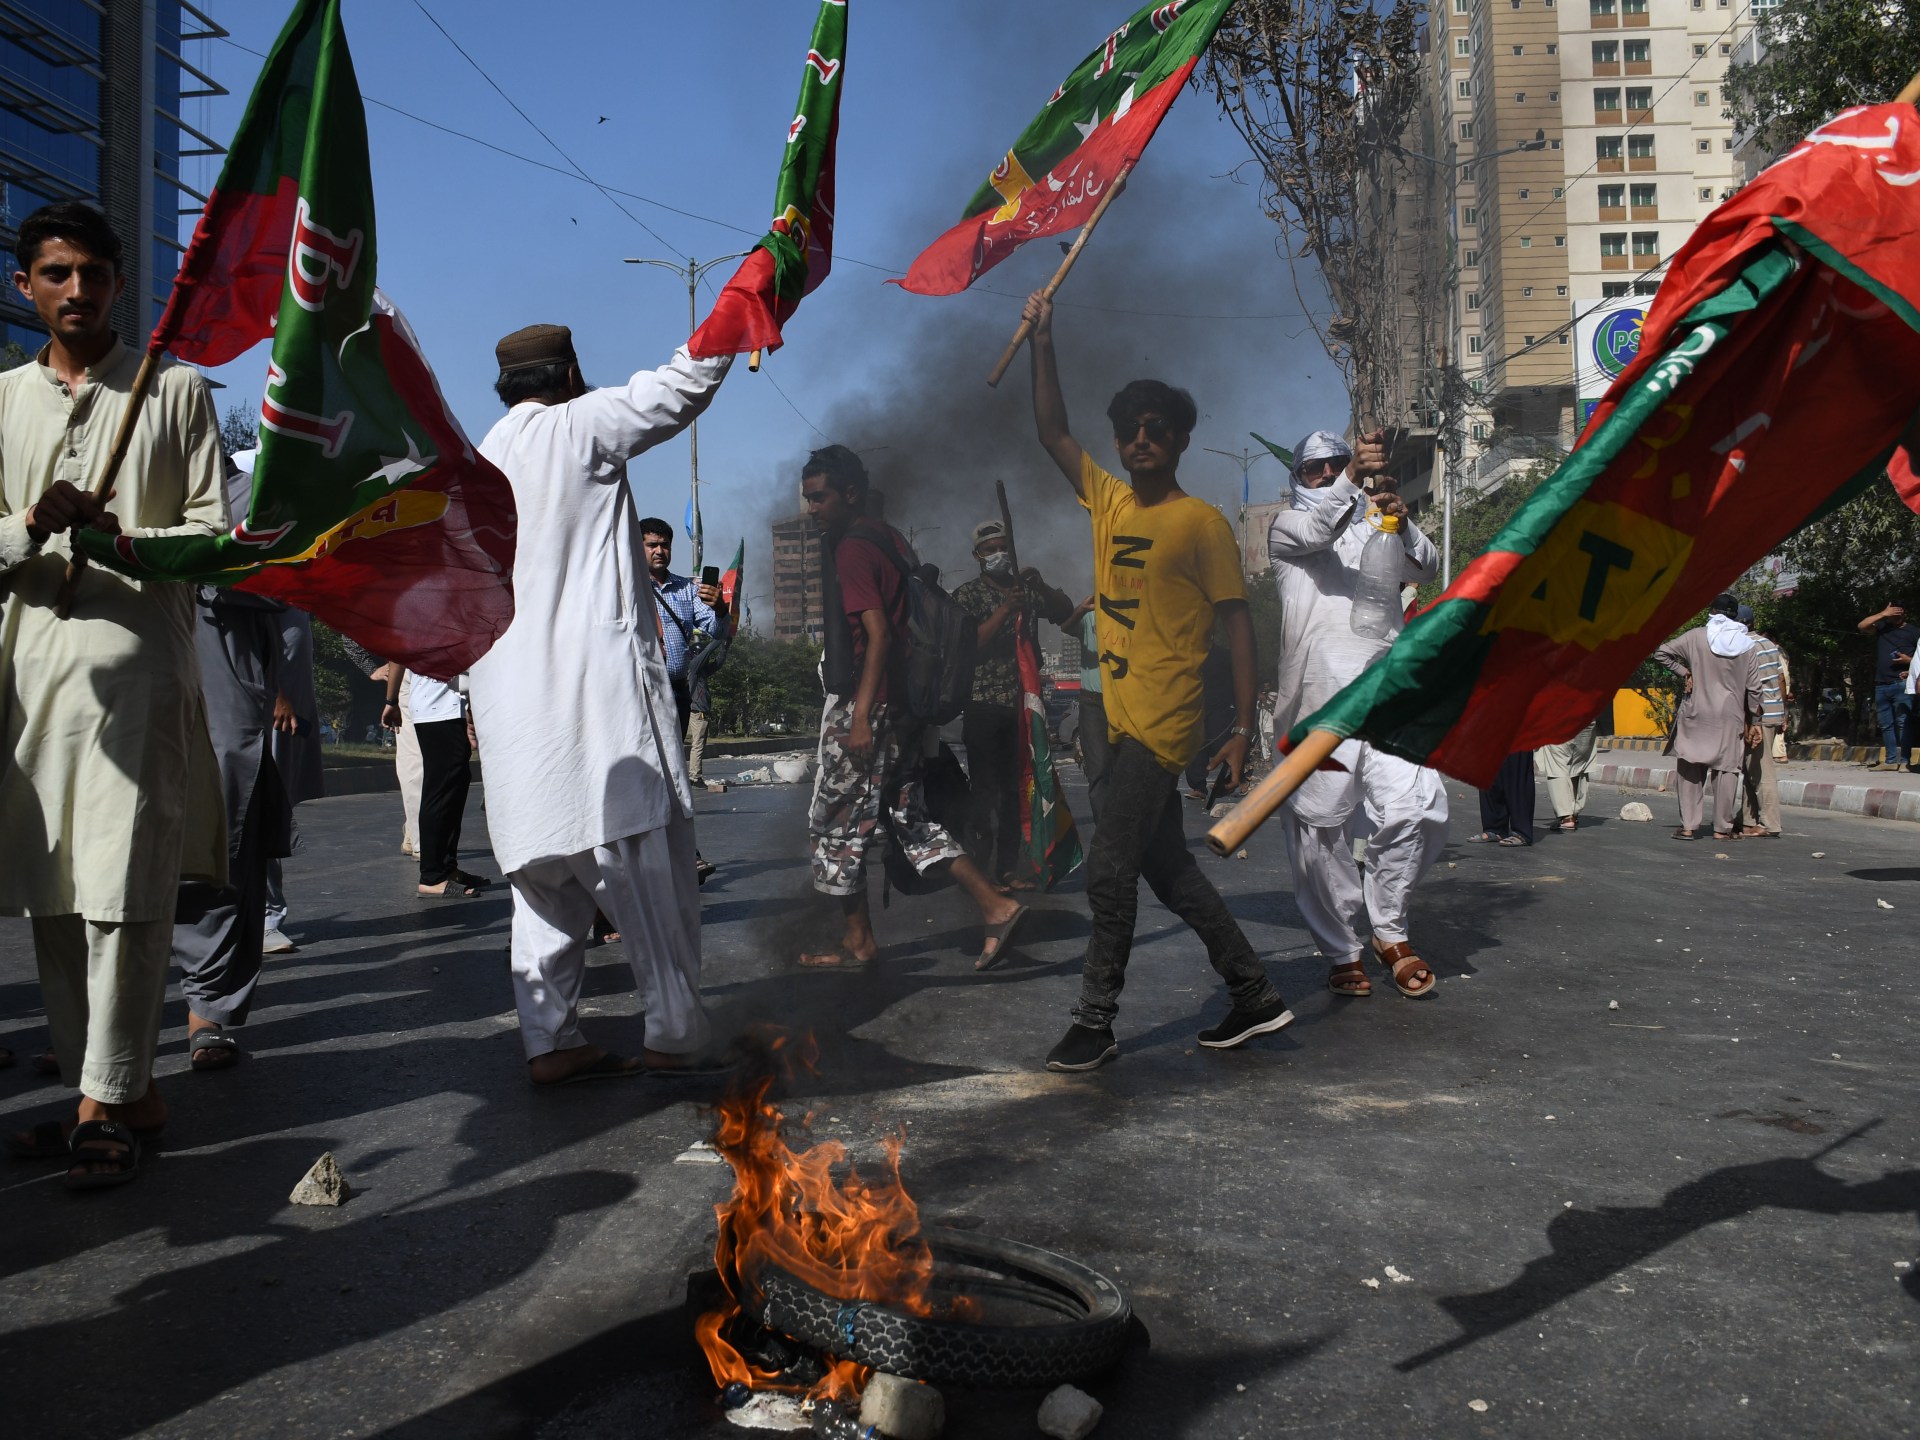 Protes meletus di kota-kota Pakistan setelah penangkapan Imran Khan |  Berita Imran Khan